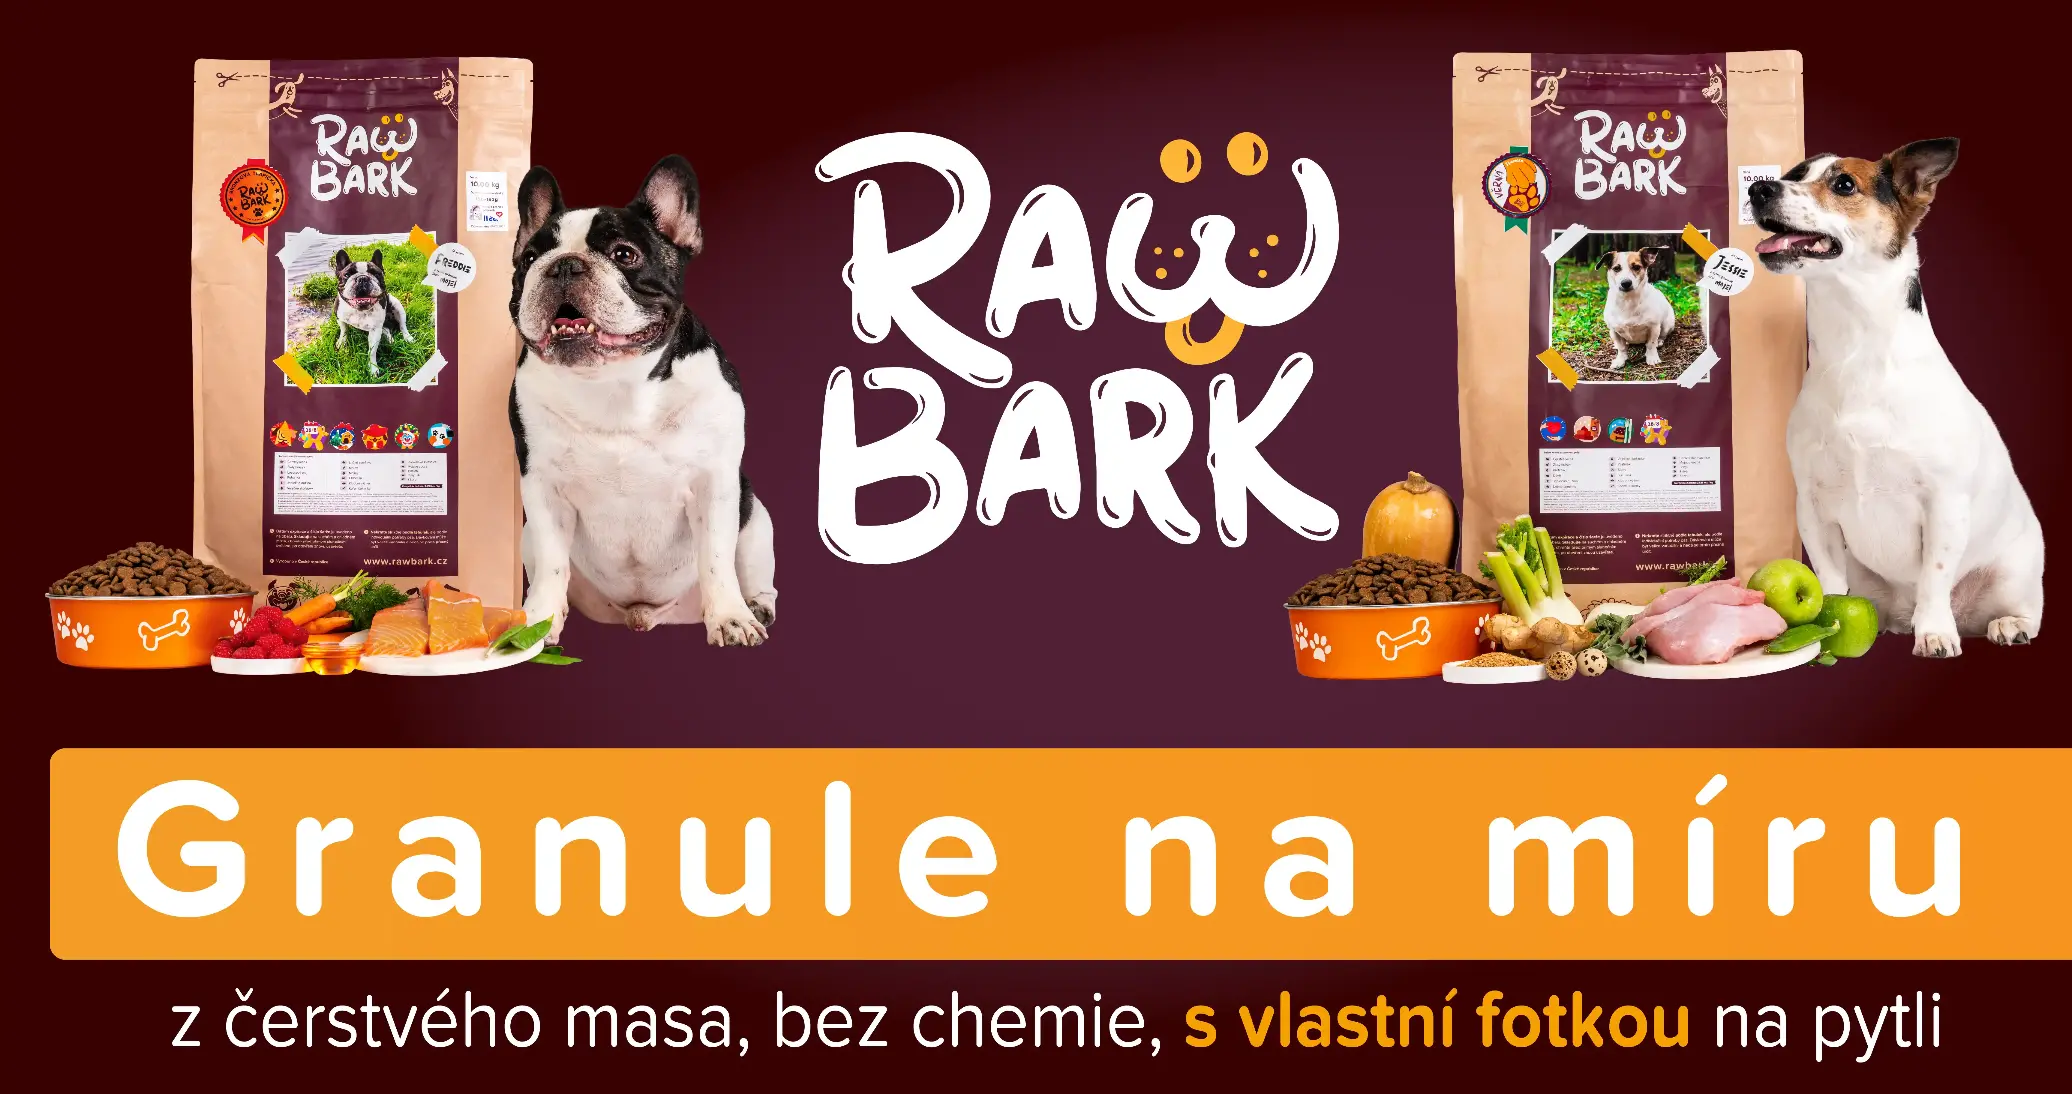 Granule RawBark - prémiové krmivo pro psy z čerstvého masa, bez chemie, s vlastní fotkou vašeho pejska na pytli.